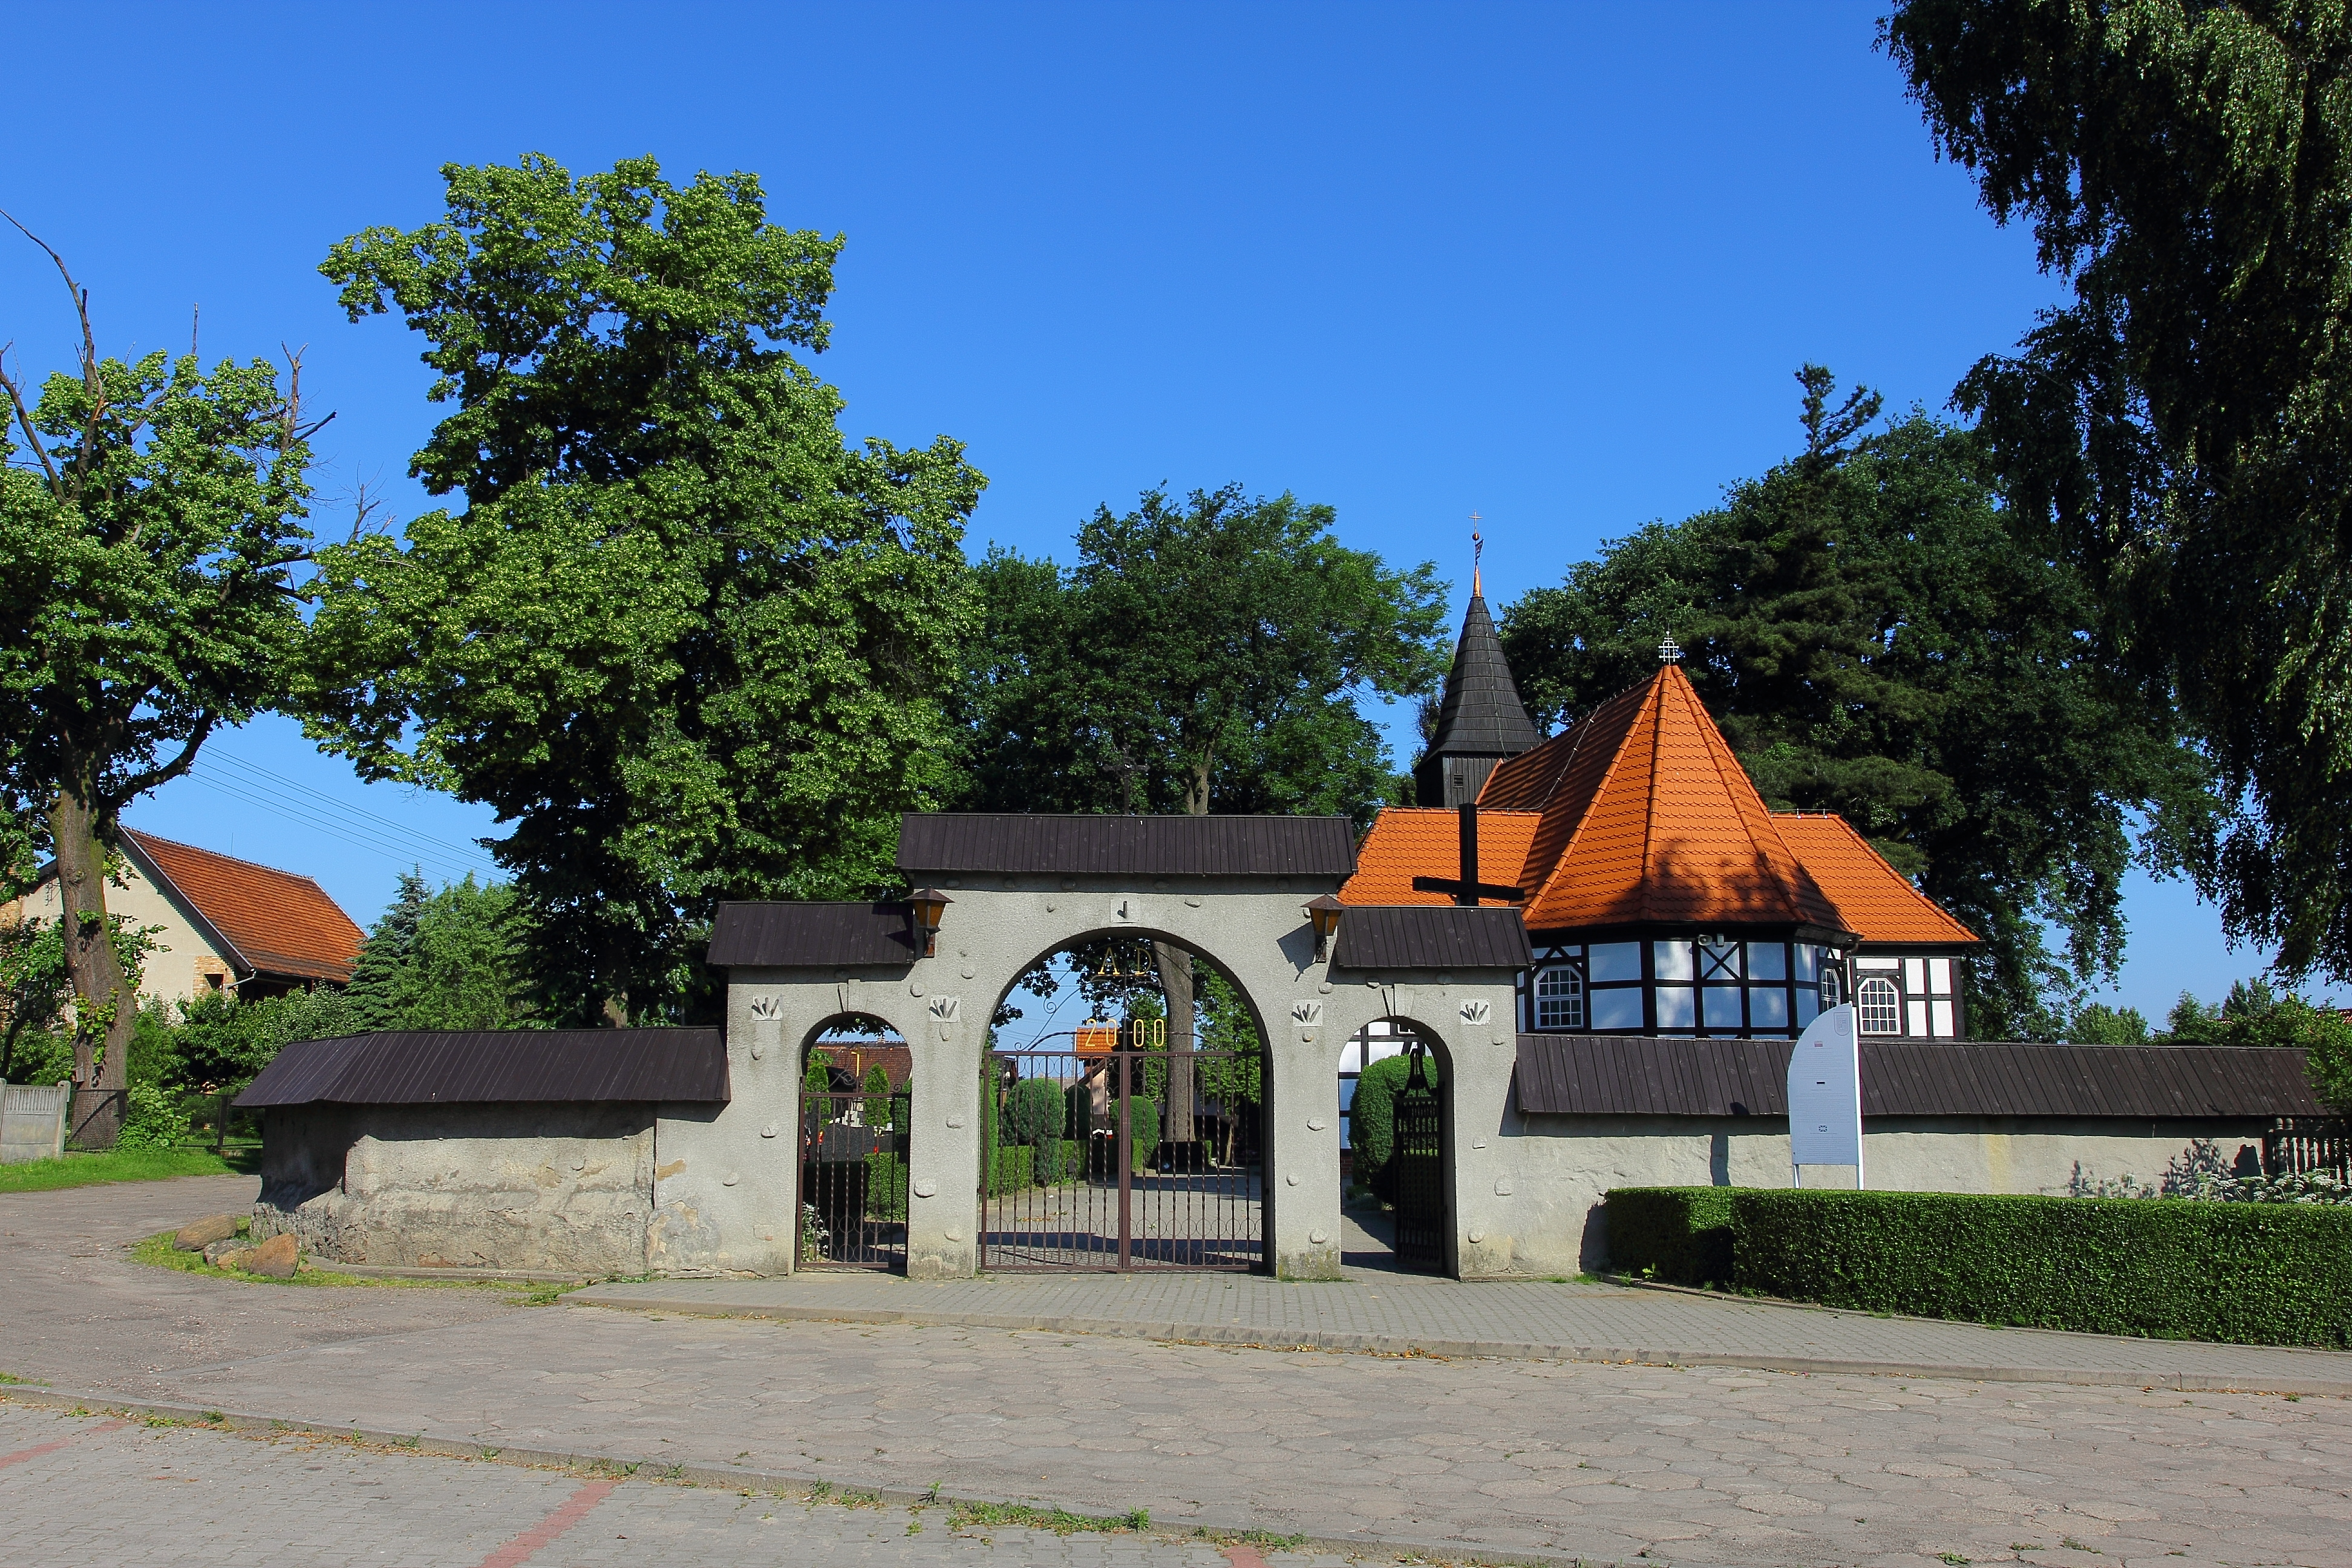 przebieg: Rydzyna (Zamek) - Moraczewo - Kaczkowo - Tarnowa Łąka - Czernina (Zamek)